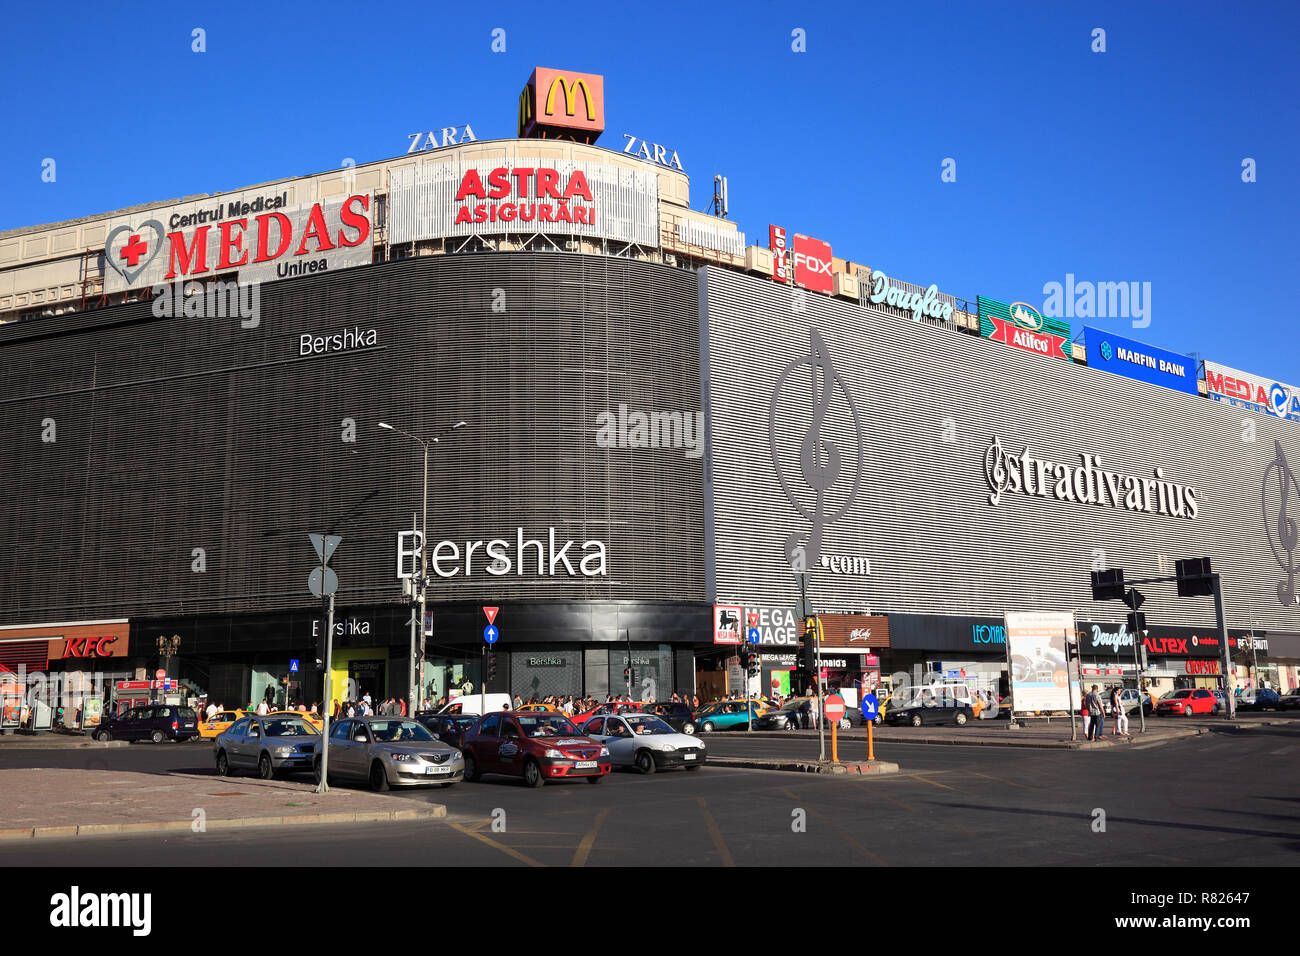 Bershka shopping immagini e fotografie stock ad alta risoluzione - Alamy